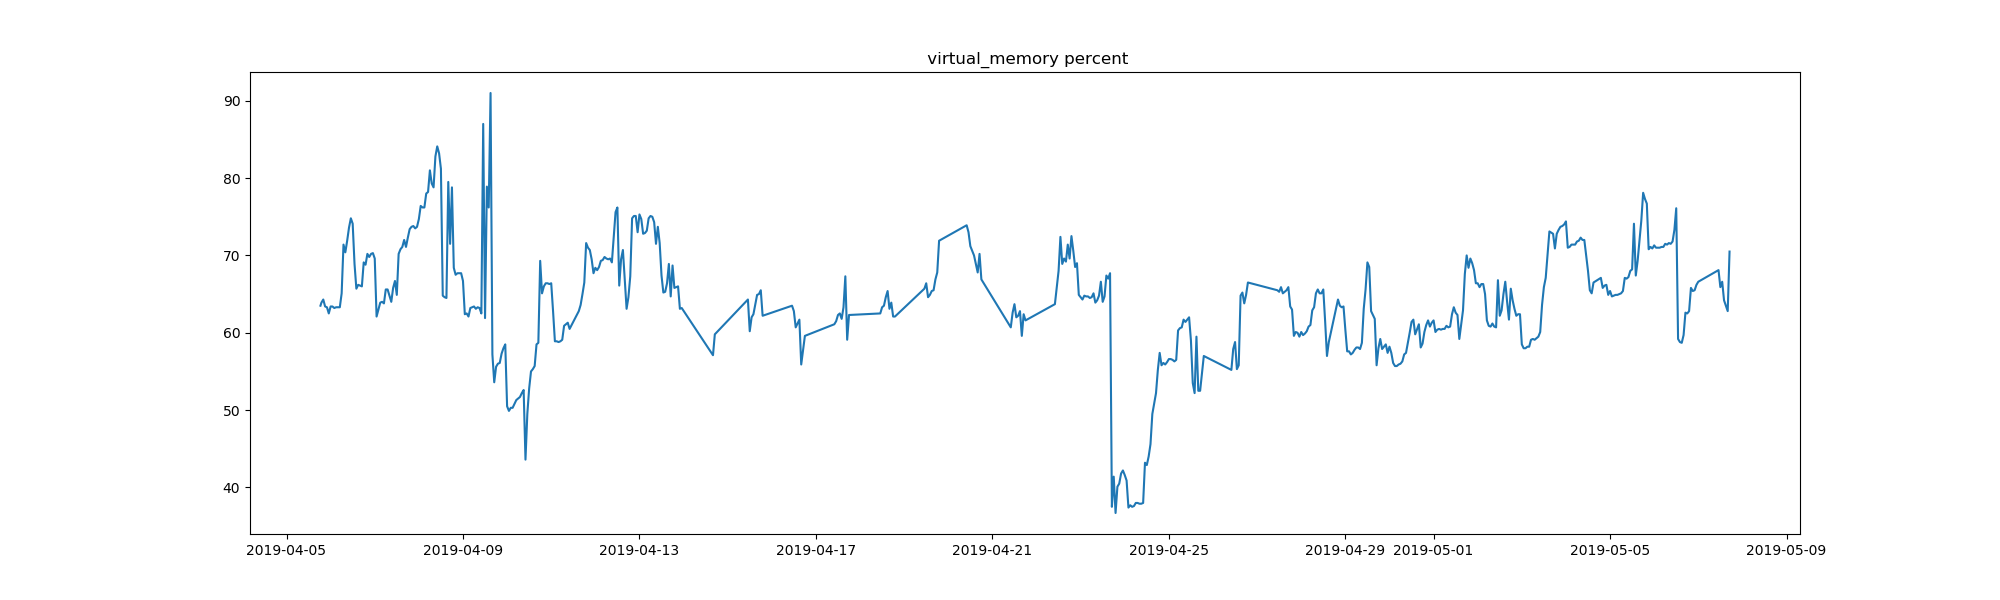 task-memory-virtual_memory-total-available-percent.png